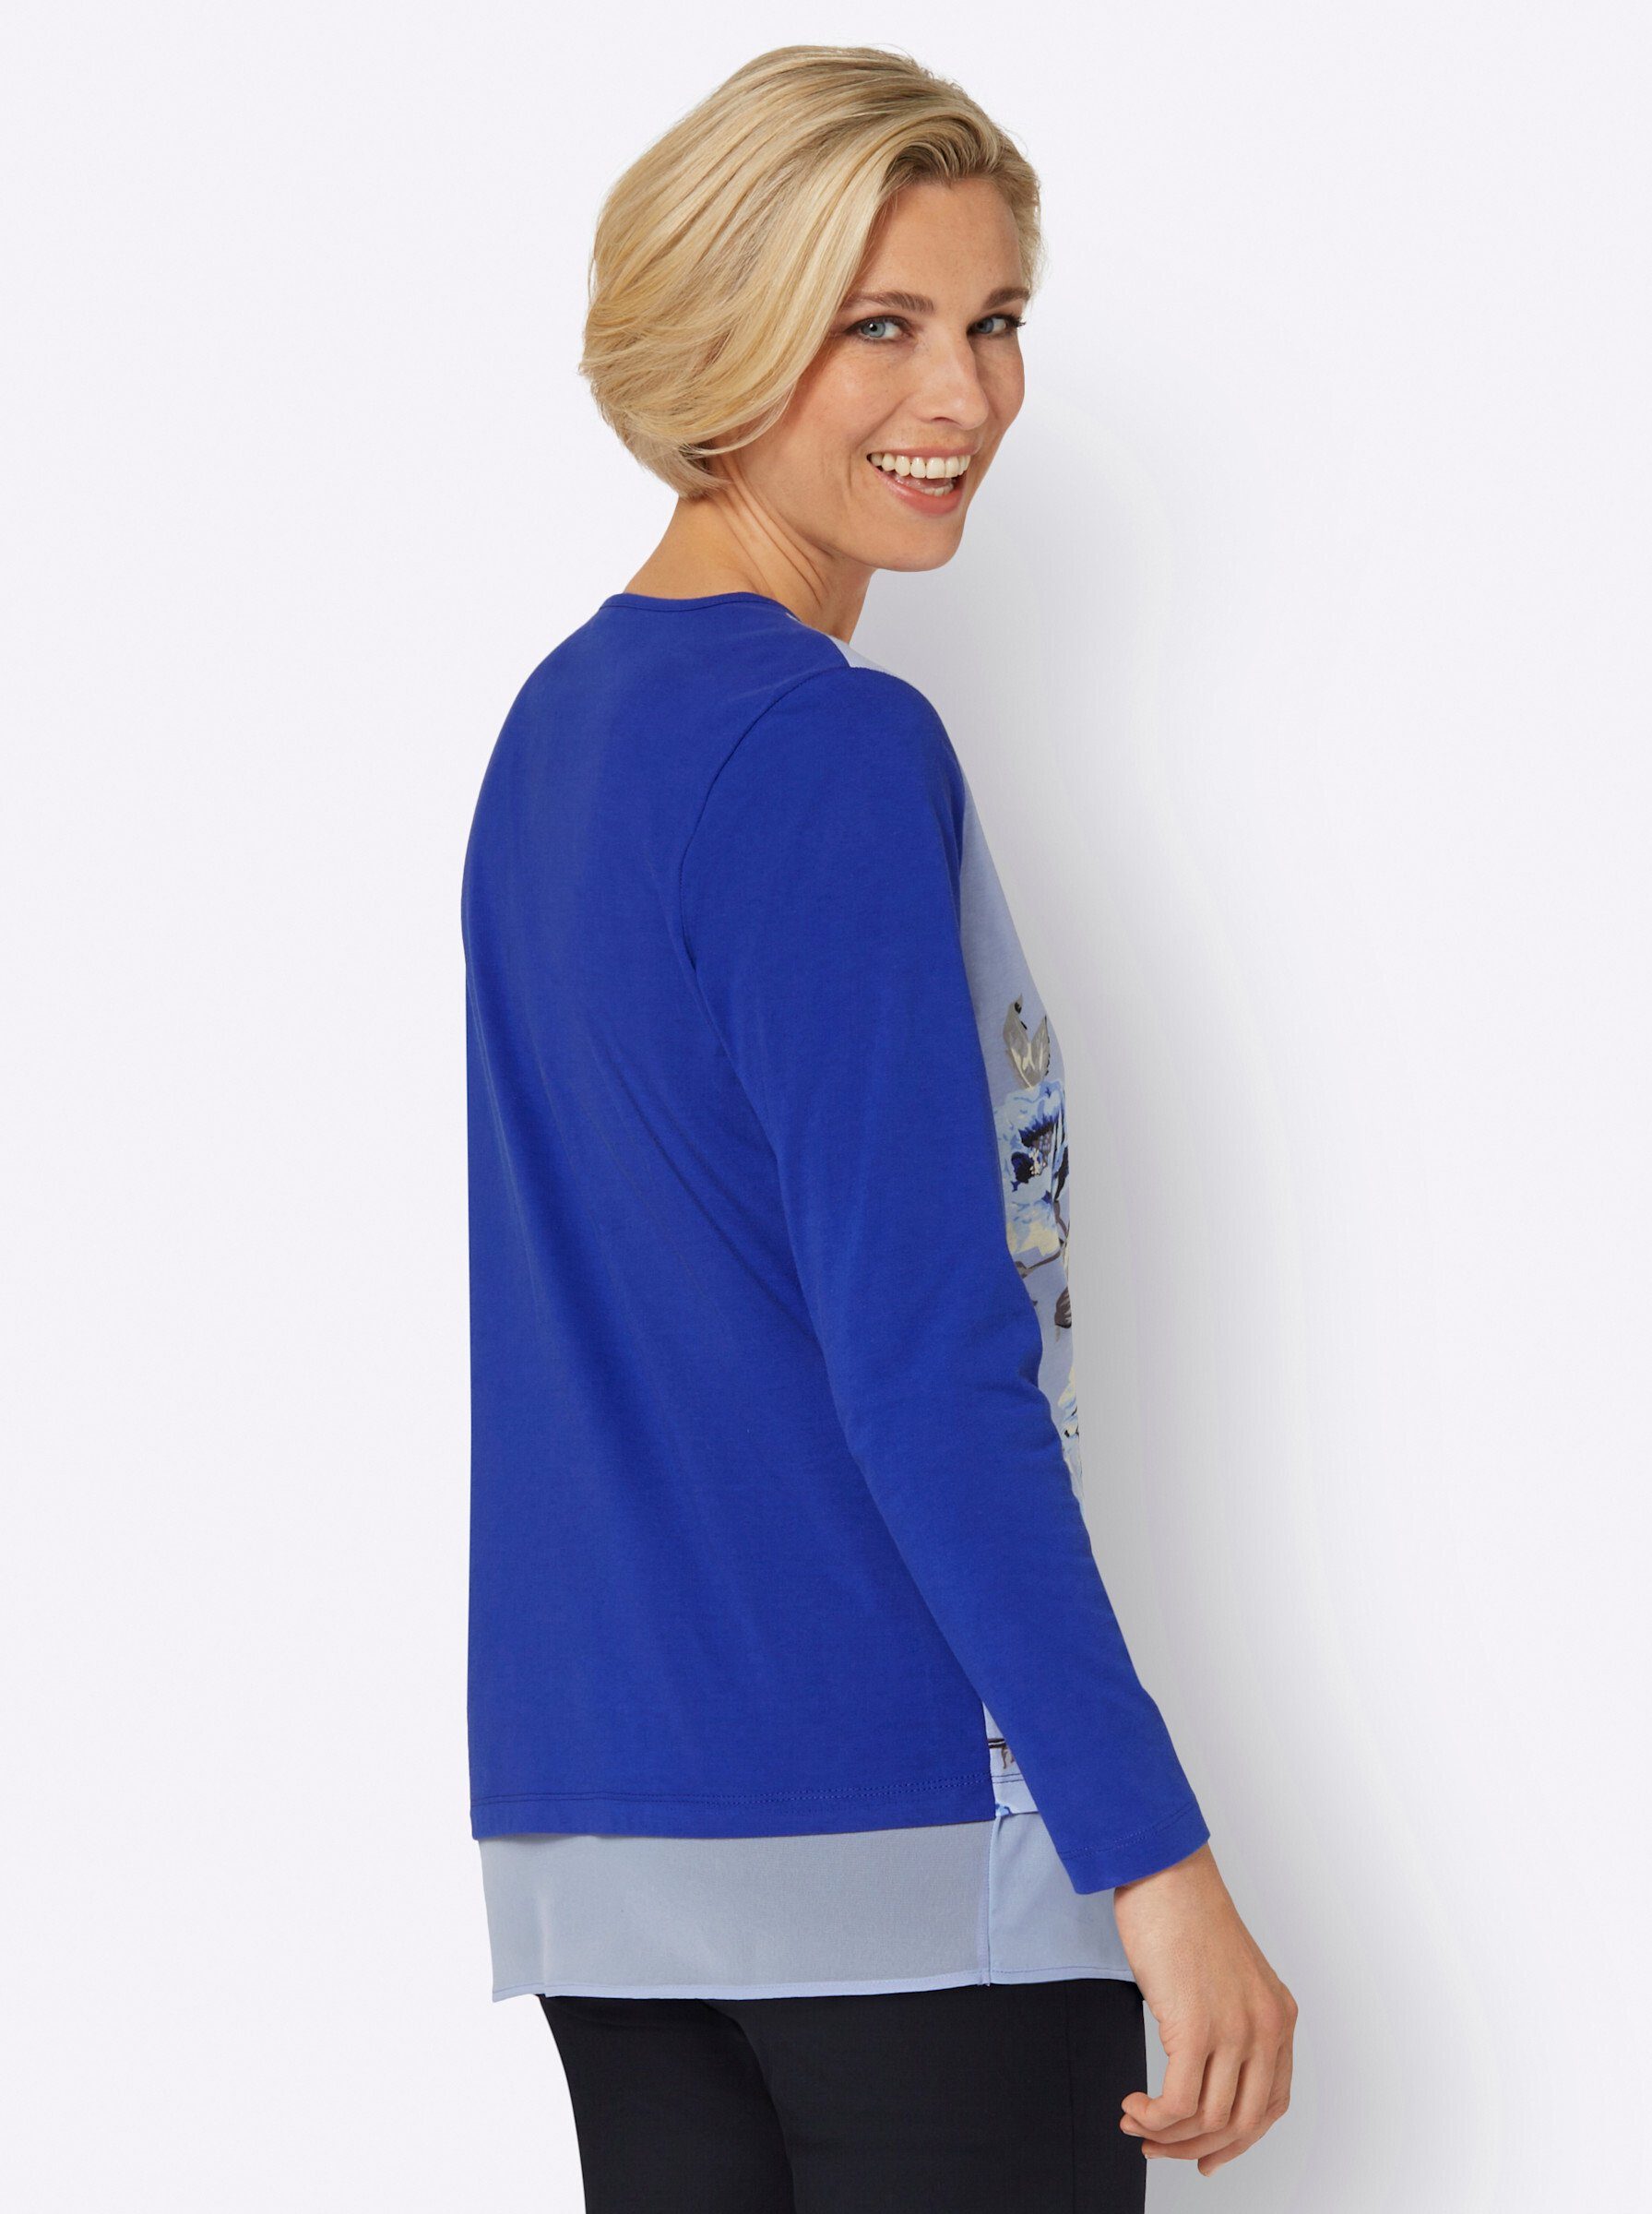 royalblau-bleu-bedruckt an! Sieh T-Shirt